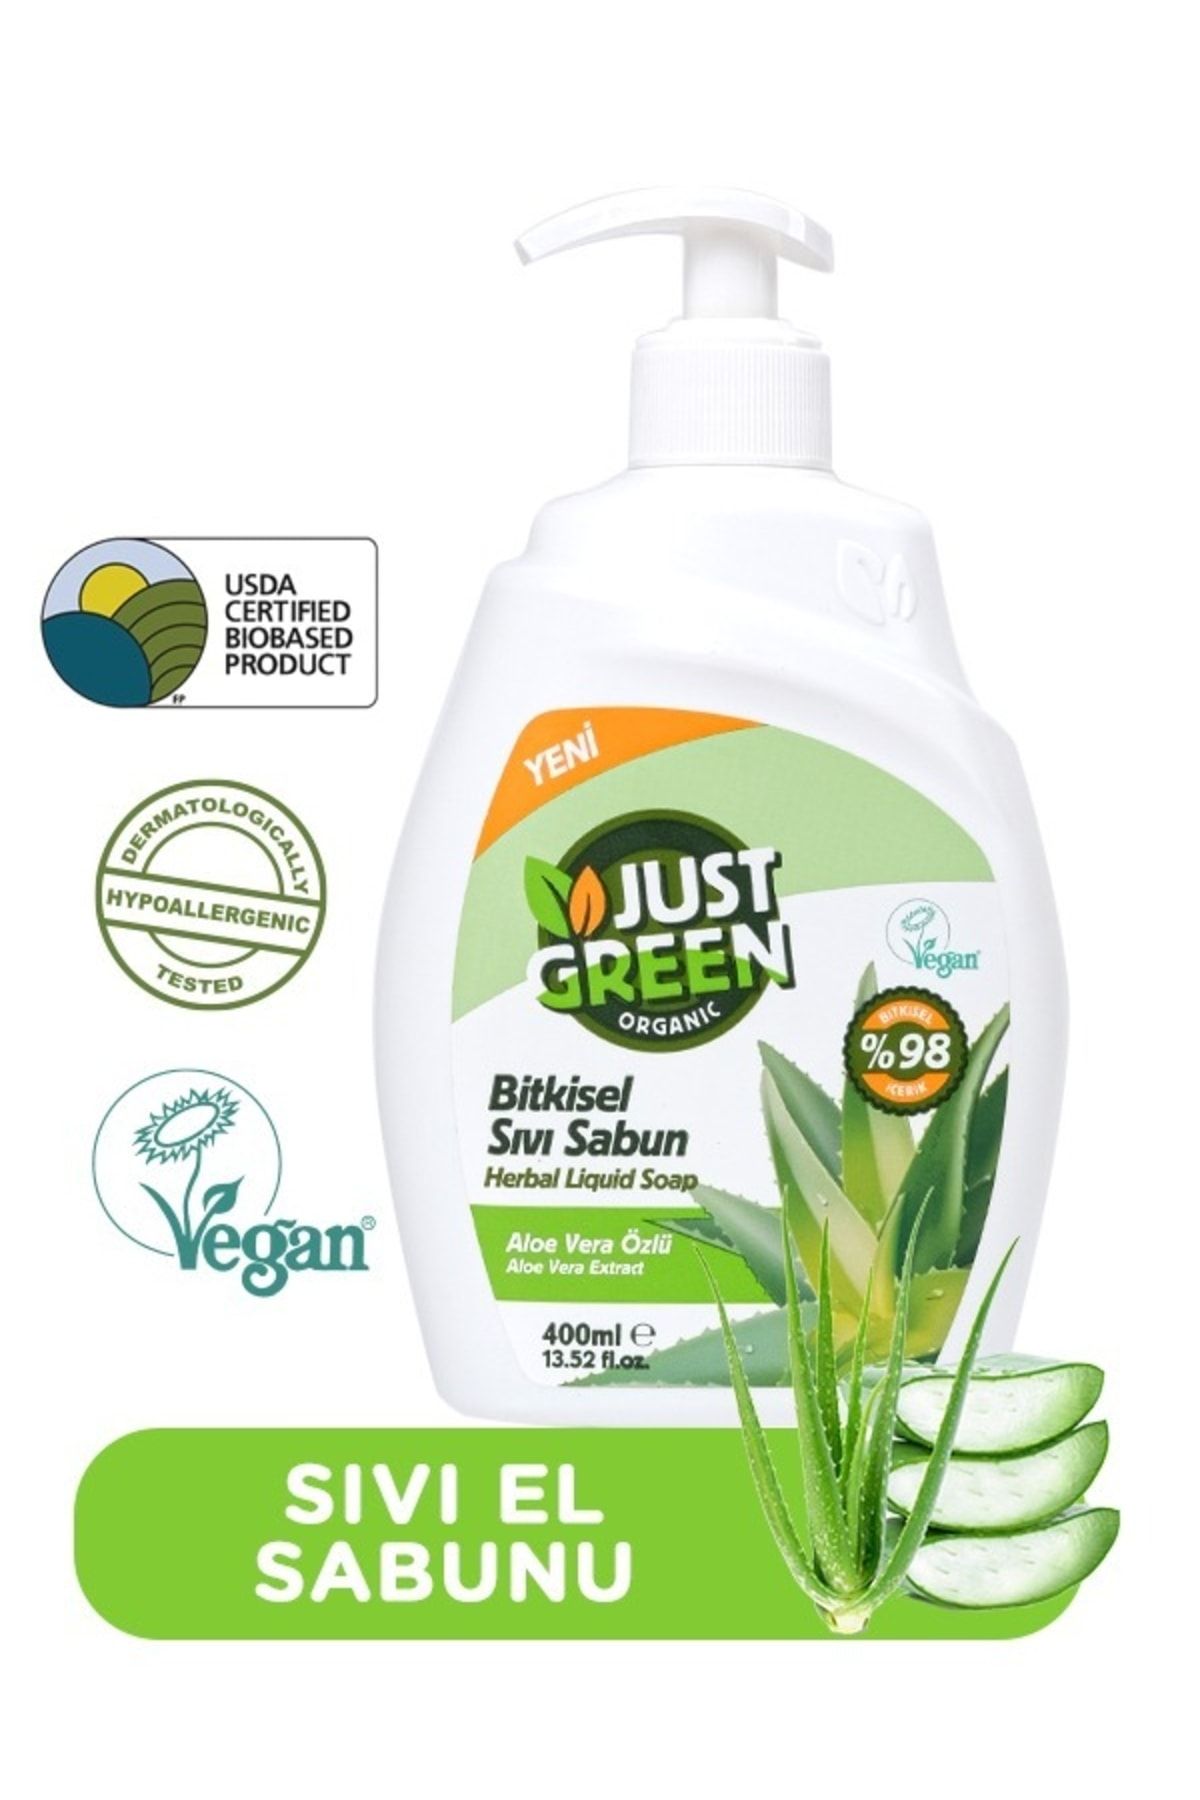 Just Green Organic Bitkisel Sıvı Sabun Aloe Vera Özlü 400ml